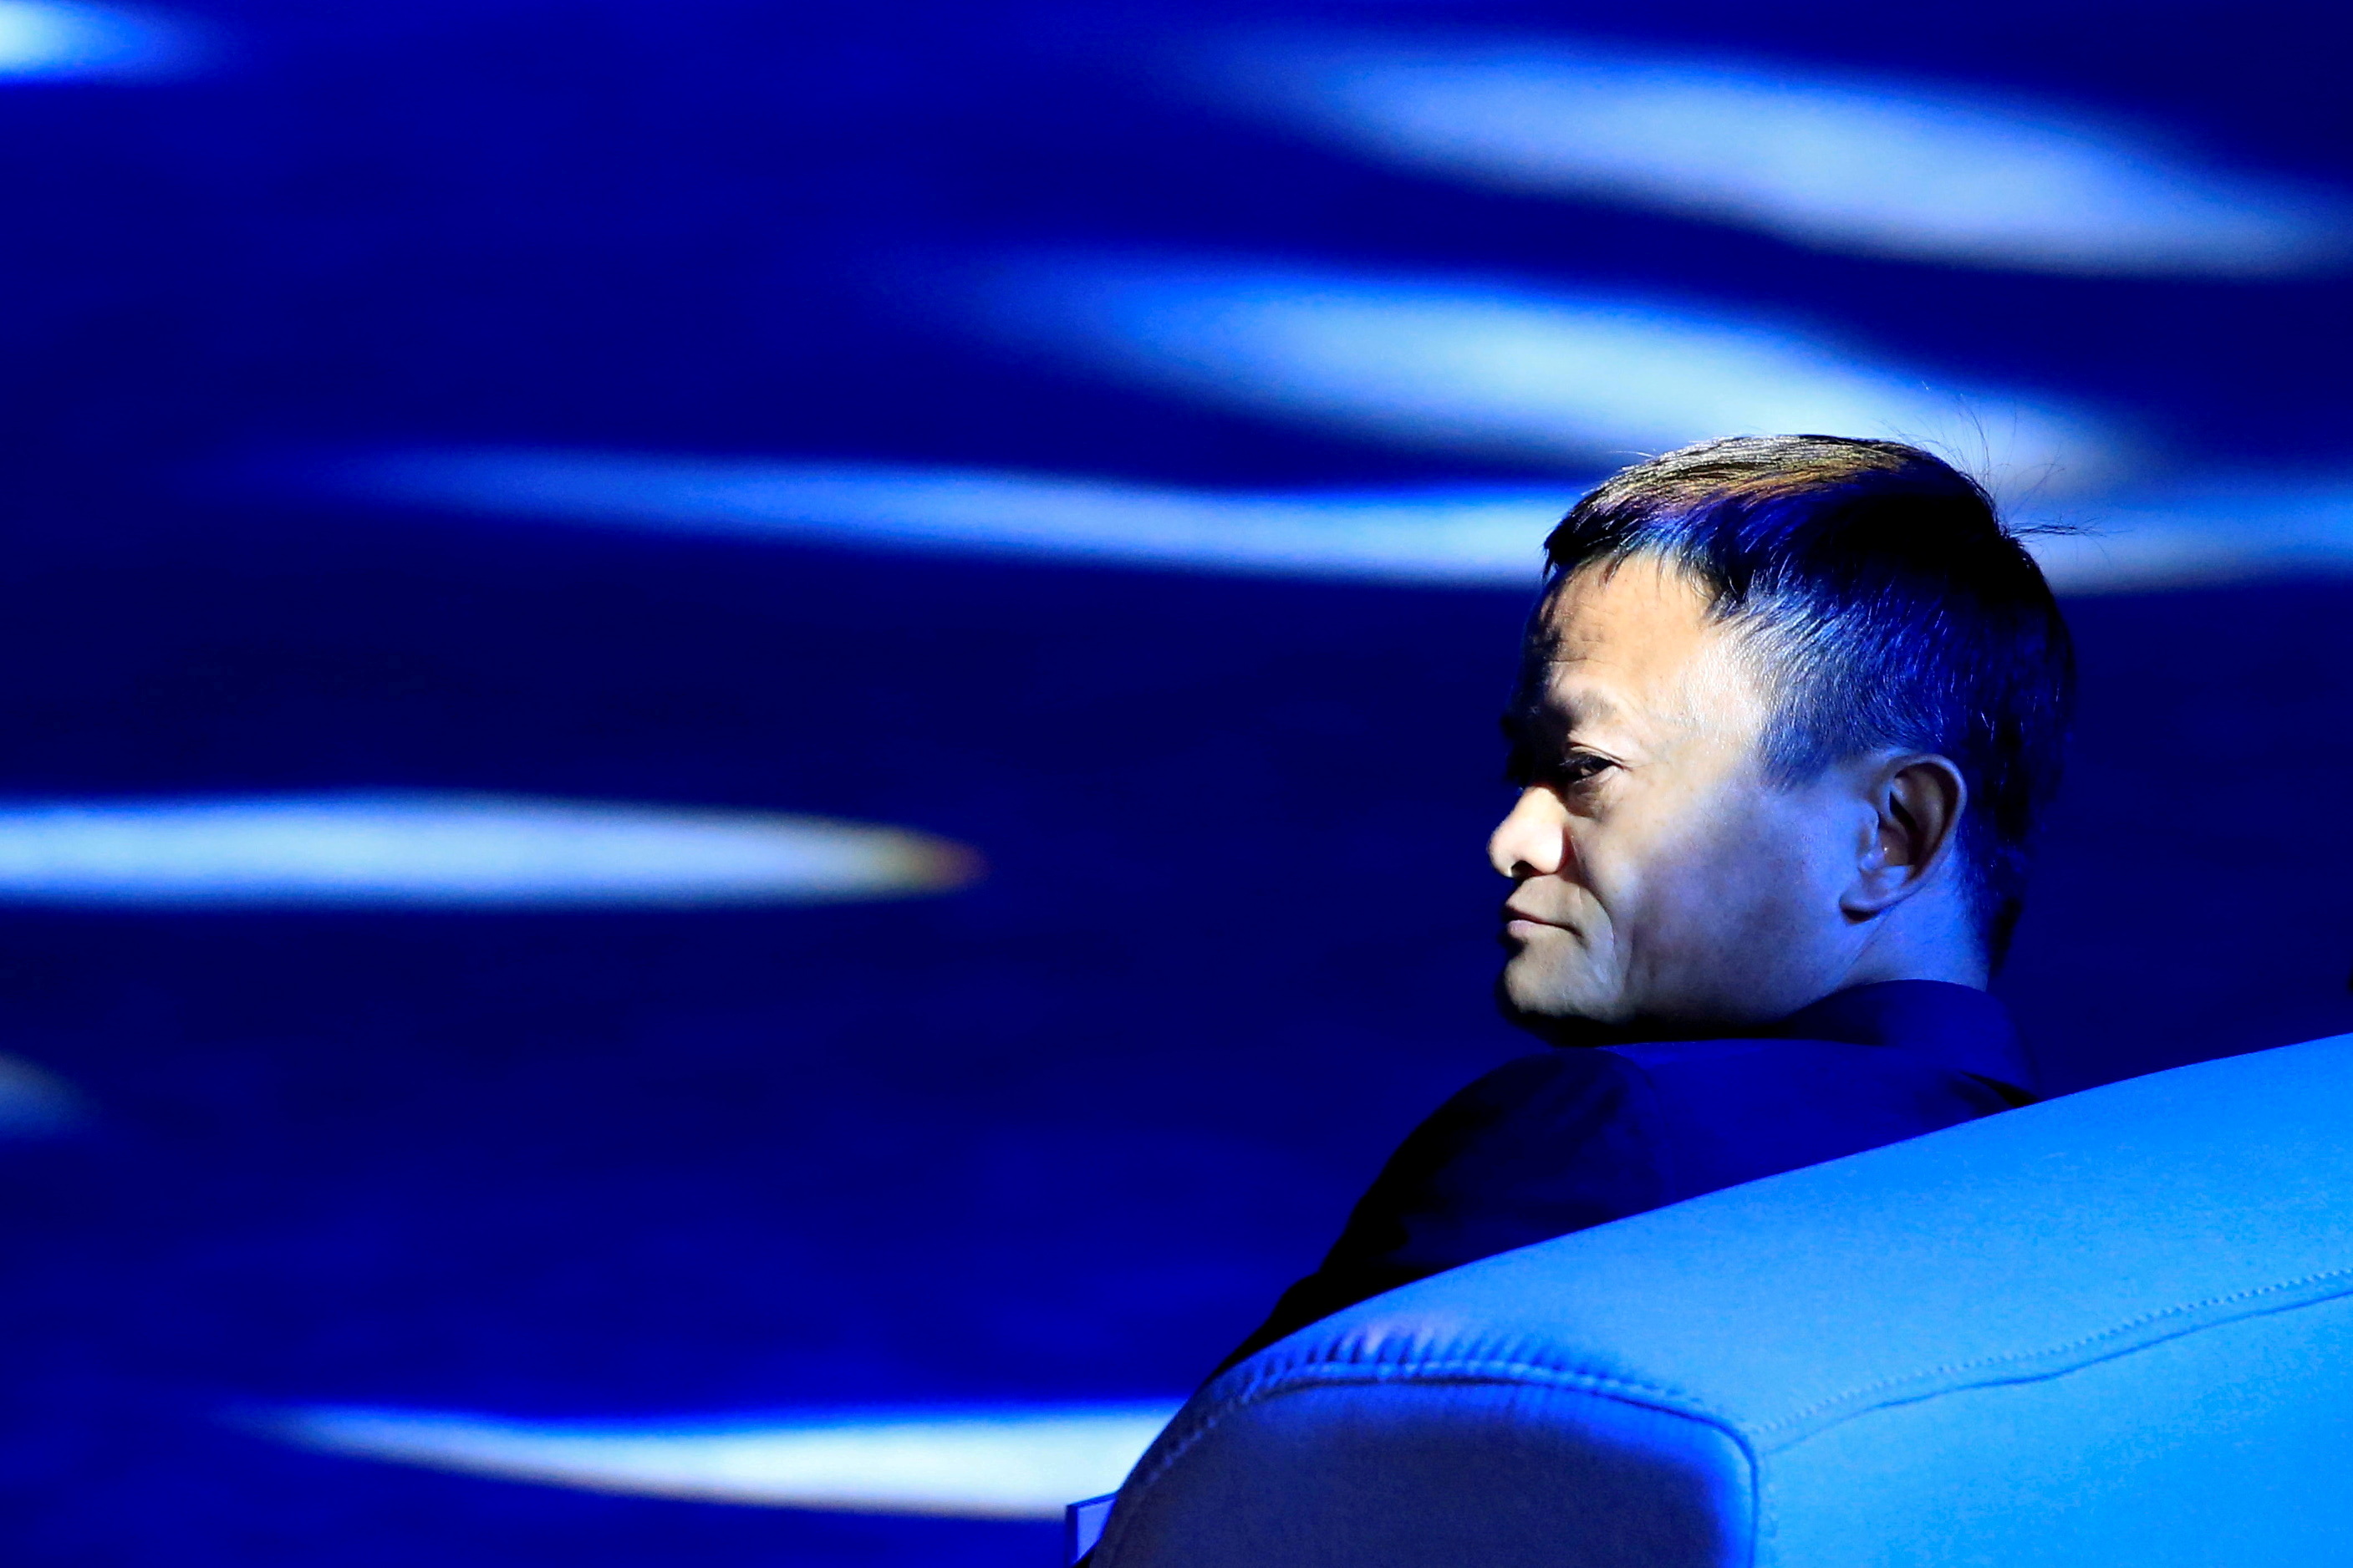 El CEO de Alibaba, Jack Ma, fue objeto de varias ofensivas por parte de Beijing. El ejecutivo debió dar marcha atrás en varios de sus proyectos por orden del régimen (Reuters)